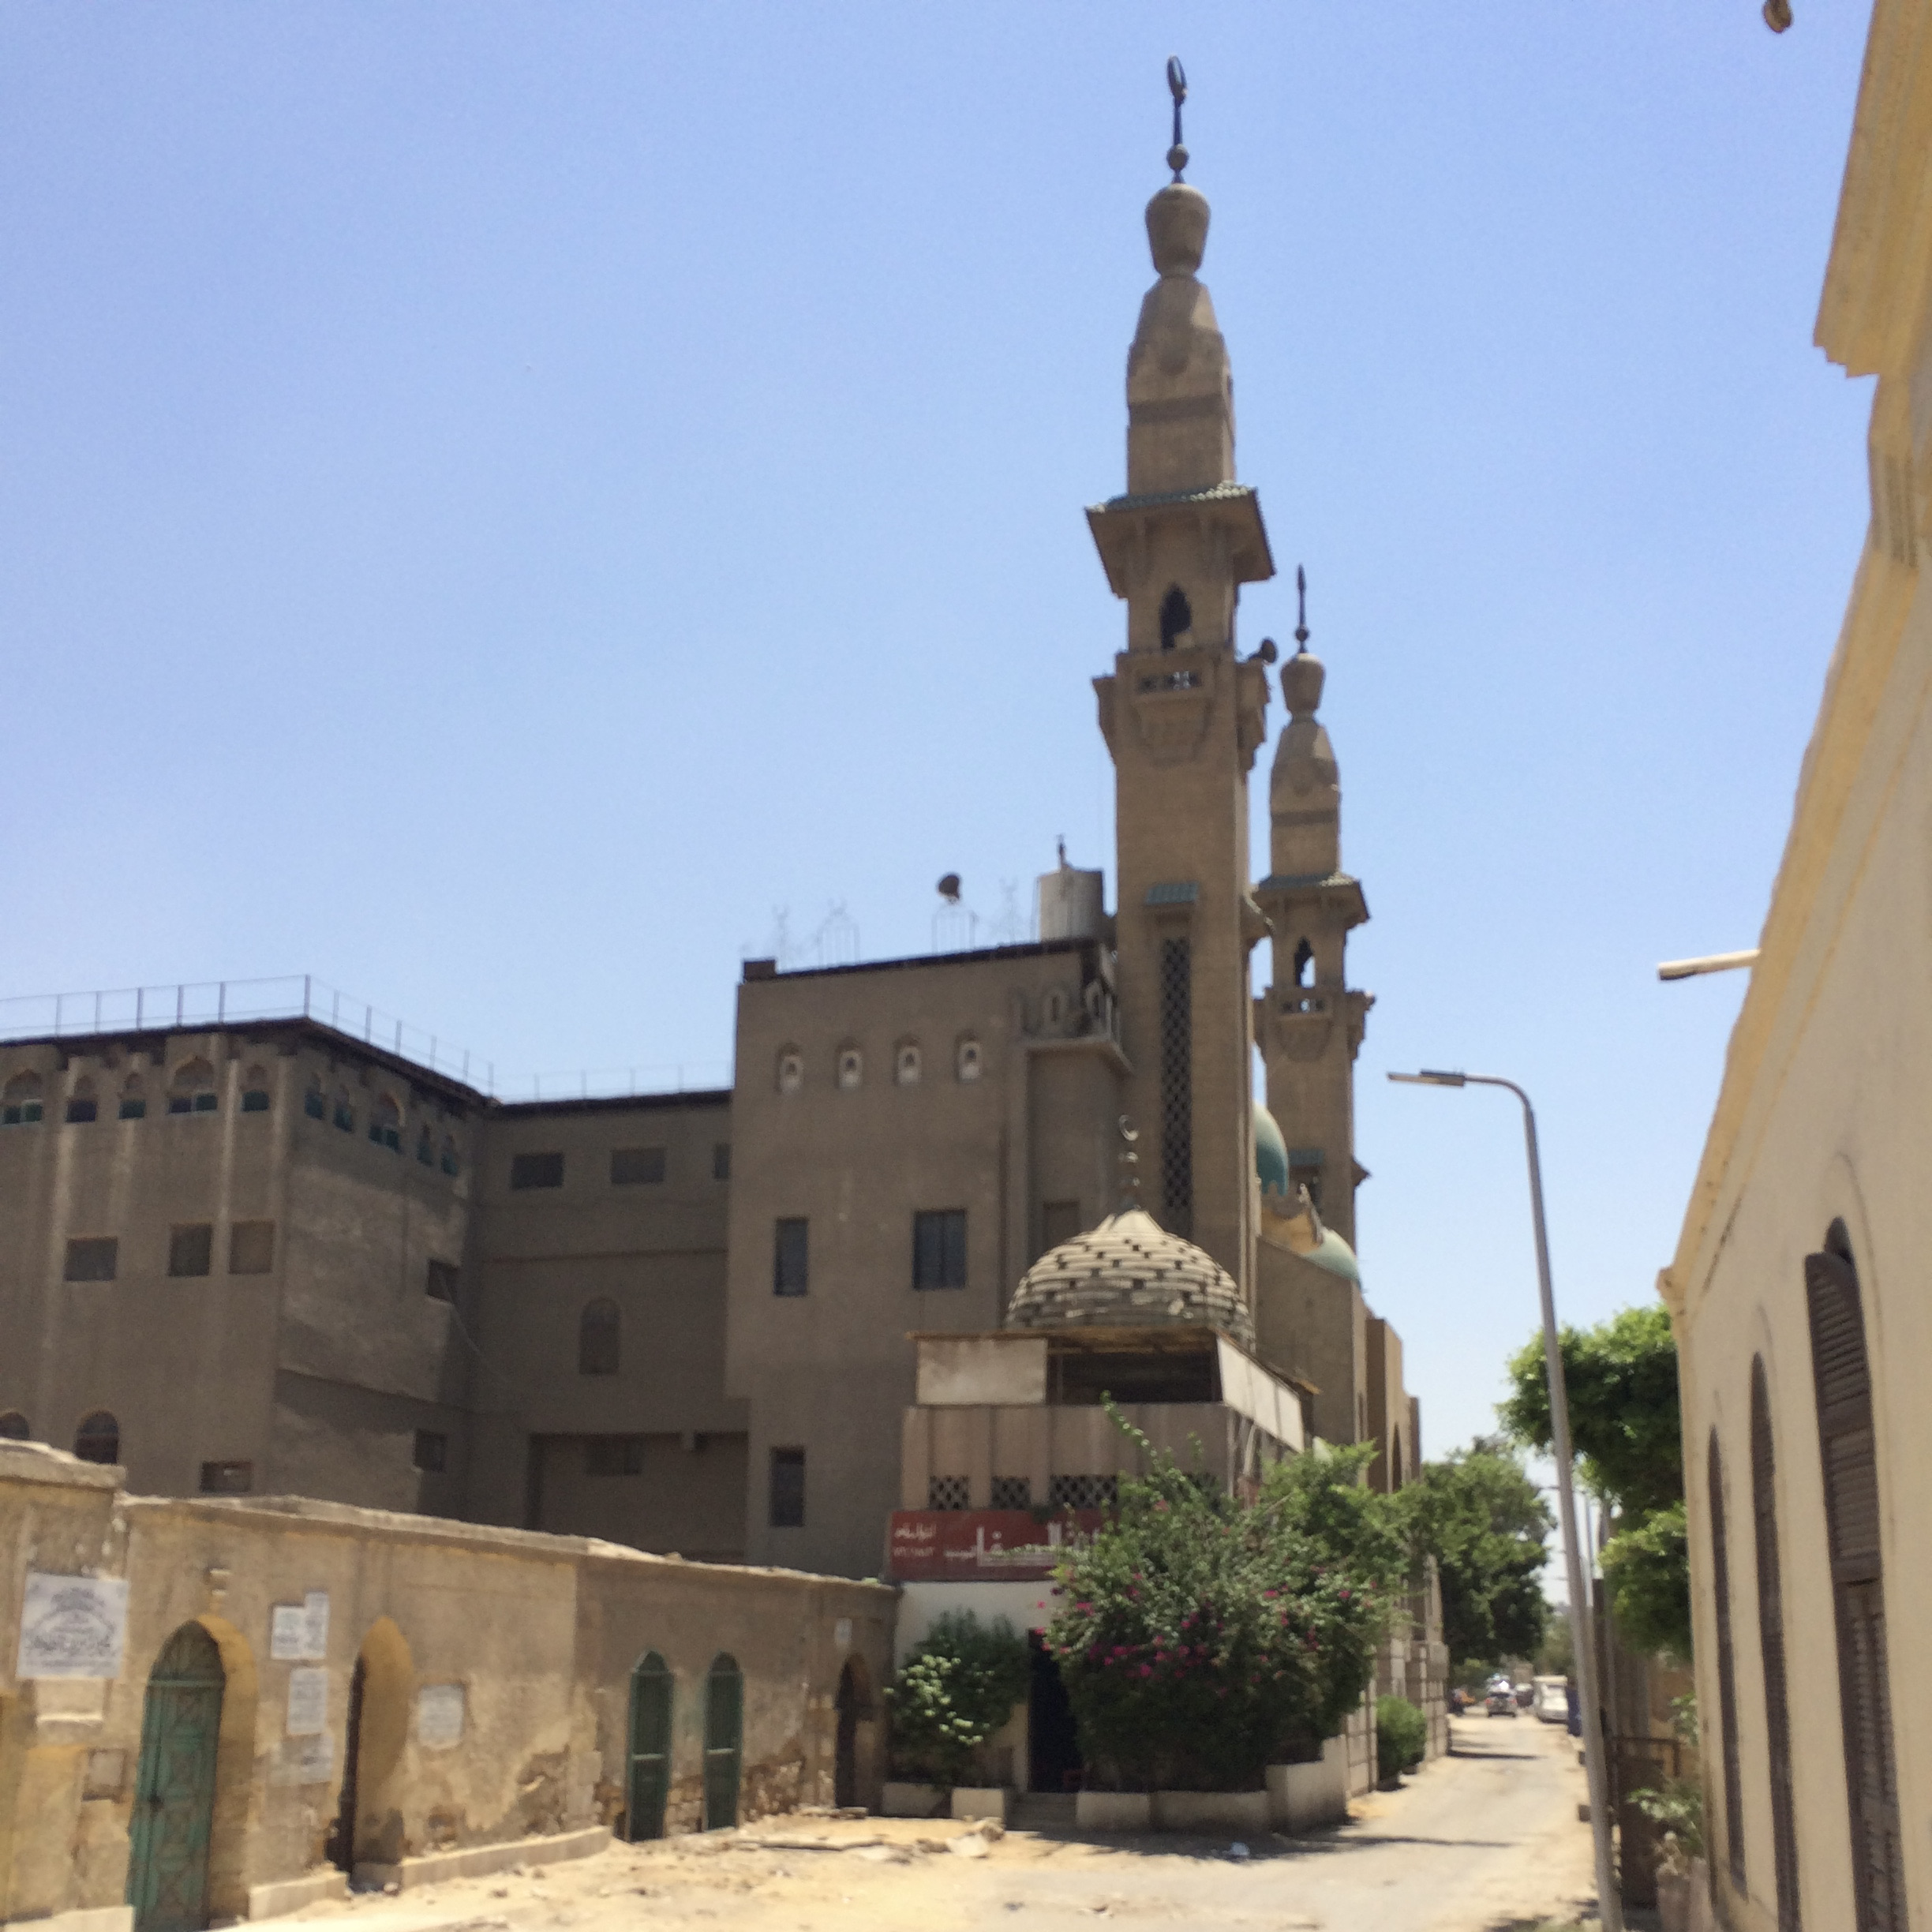 De minaretten van een moskeetje in de Stad der Doden in Caïro, Egypte.